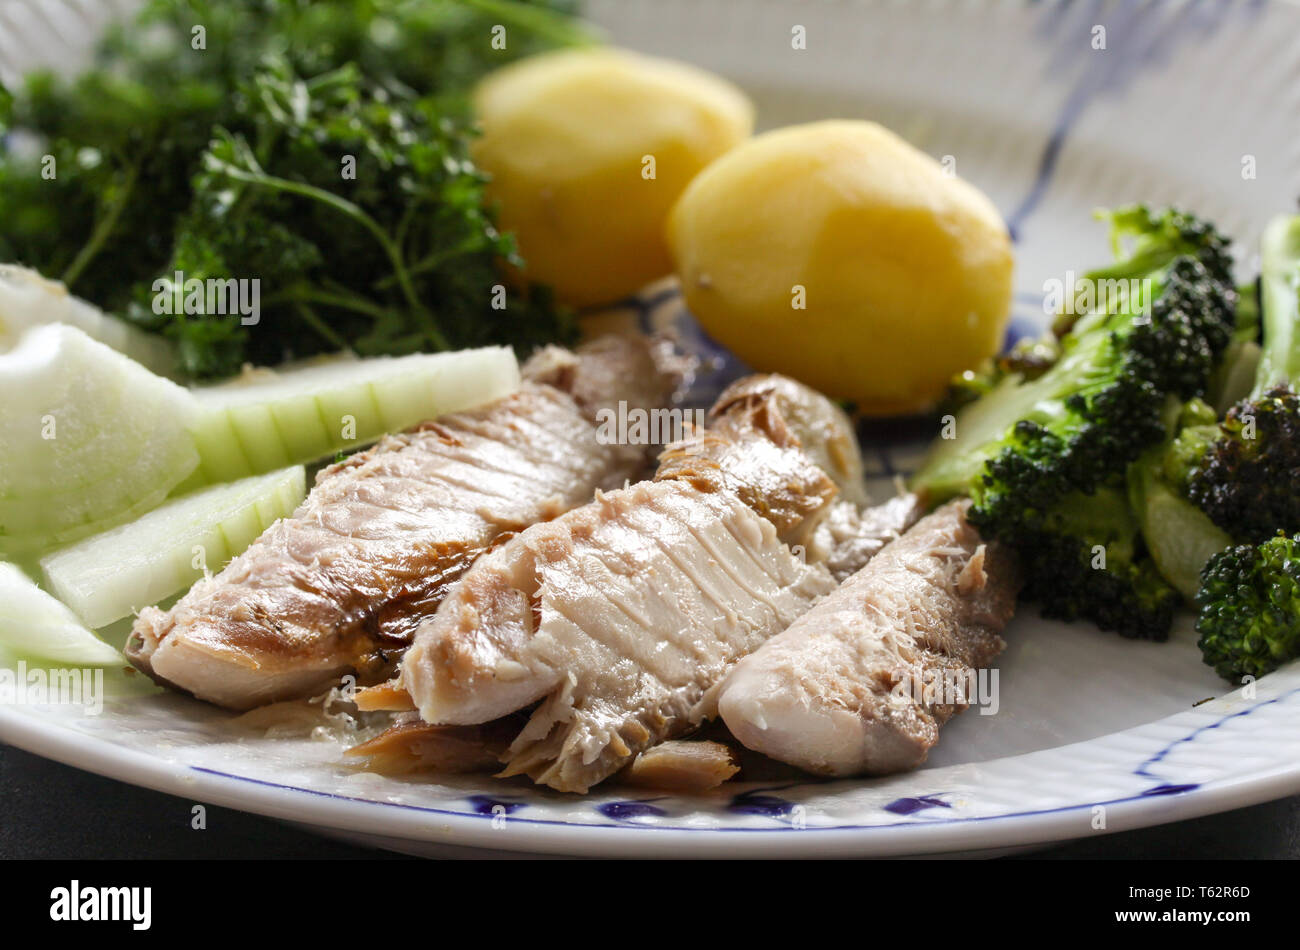 Makrele Fischgericht mit Kartoffeln, Broccoli, Zwiebeln und Vergehen. Fettige, ölige Fische ist eine ausgezeichnete und gesunde Quelle von DHA und EPA, die zwei Schlüssel t Stockfoto